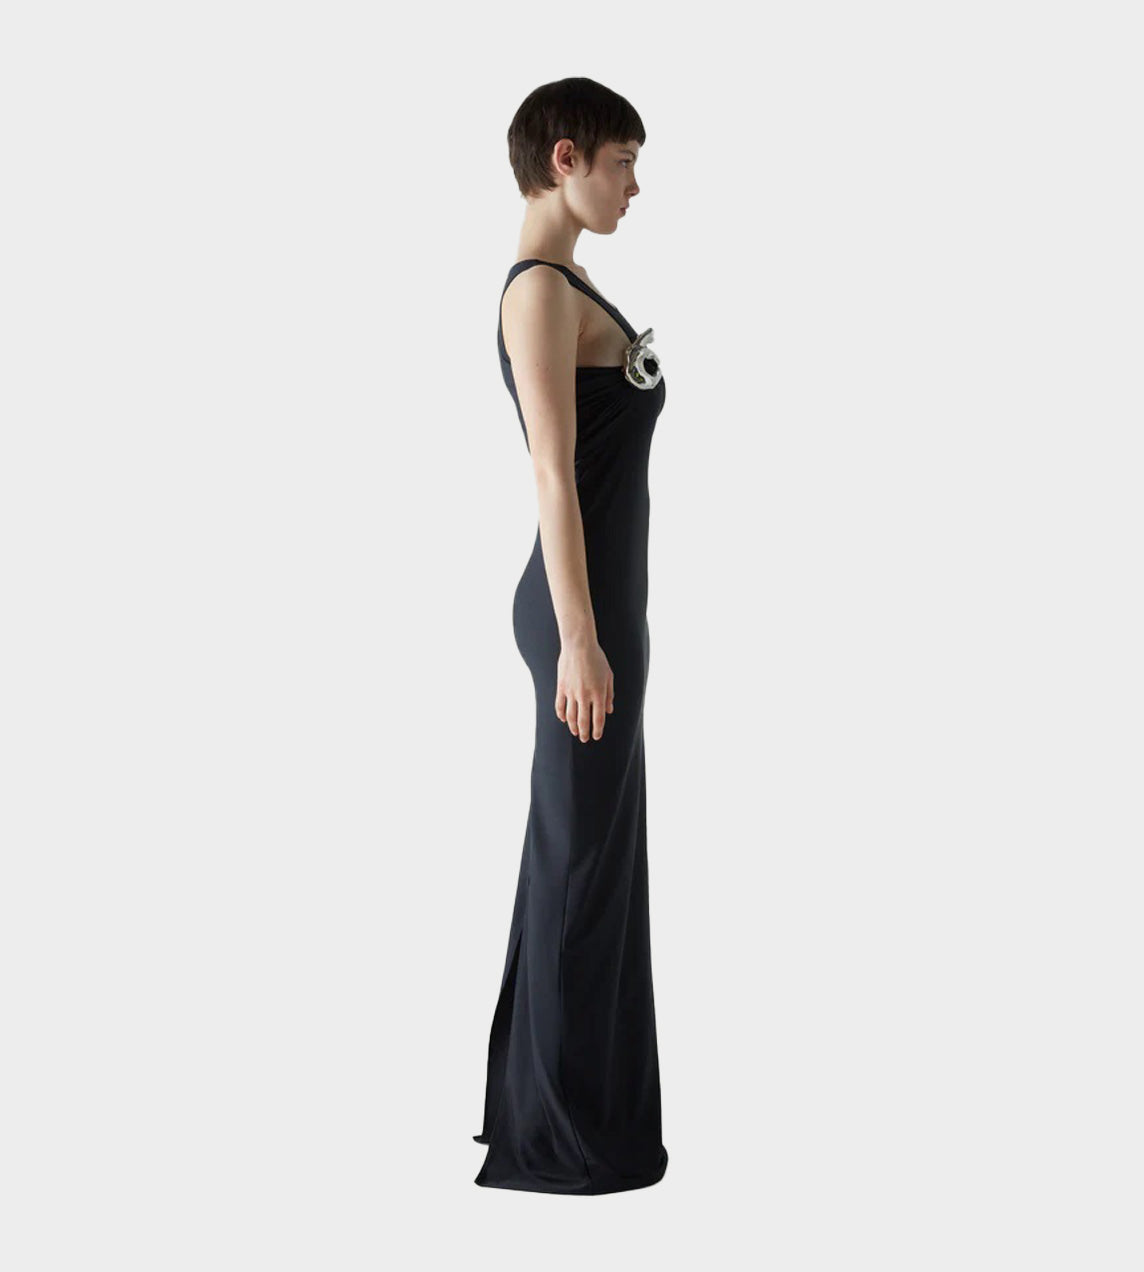 Coperni - Single Emoji Dress Black